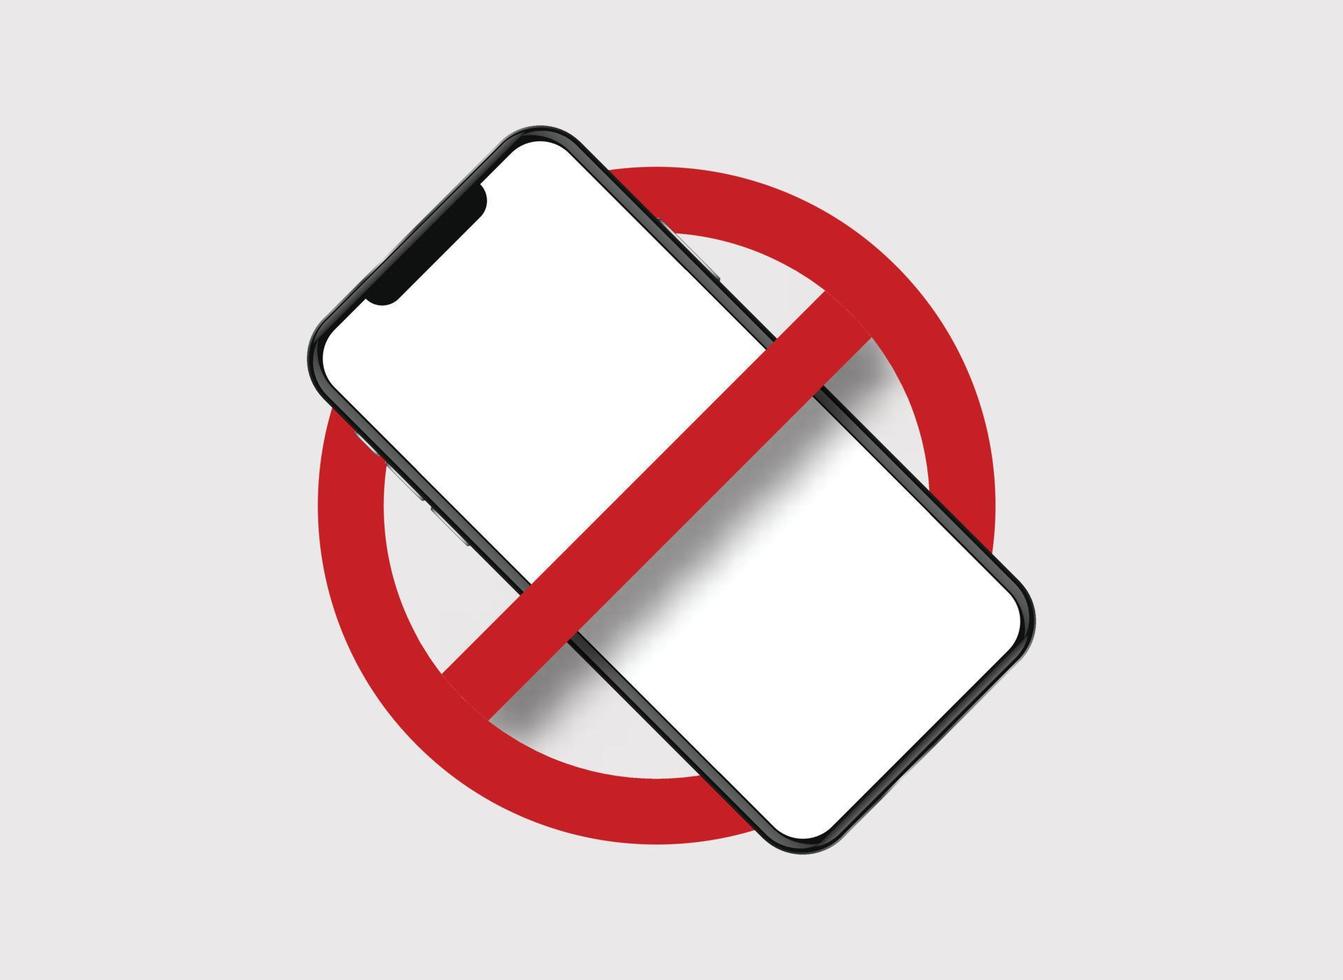 teléfono móvil prohibido. el teléfono inteligente en círculo tachado con la prohibición de la línea roja usa la regla de dispositivos electrónicos que advierte sobre la restricción de llamadas y el área segura del vector de comunicación web del ruido en línea.